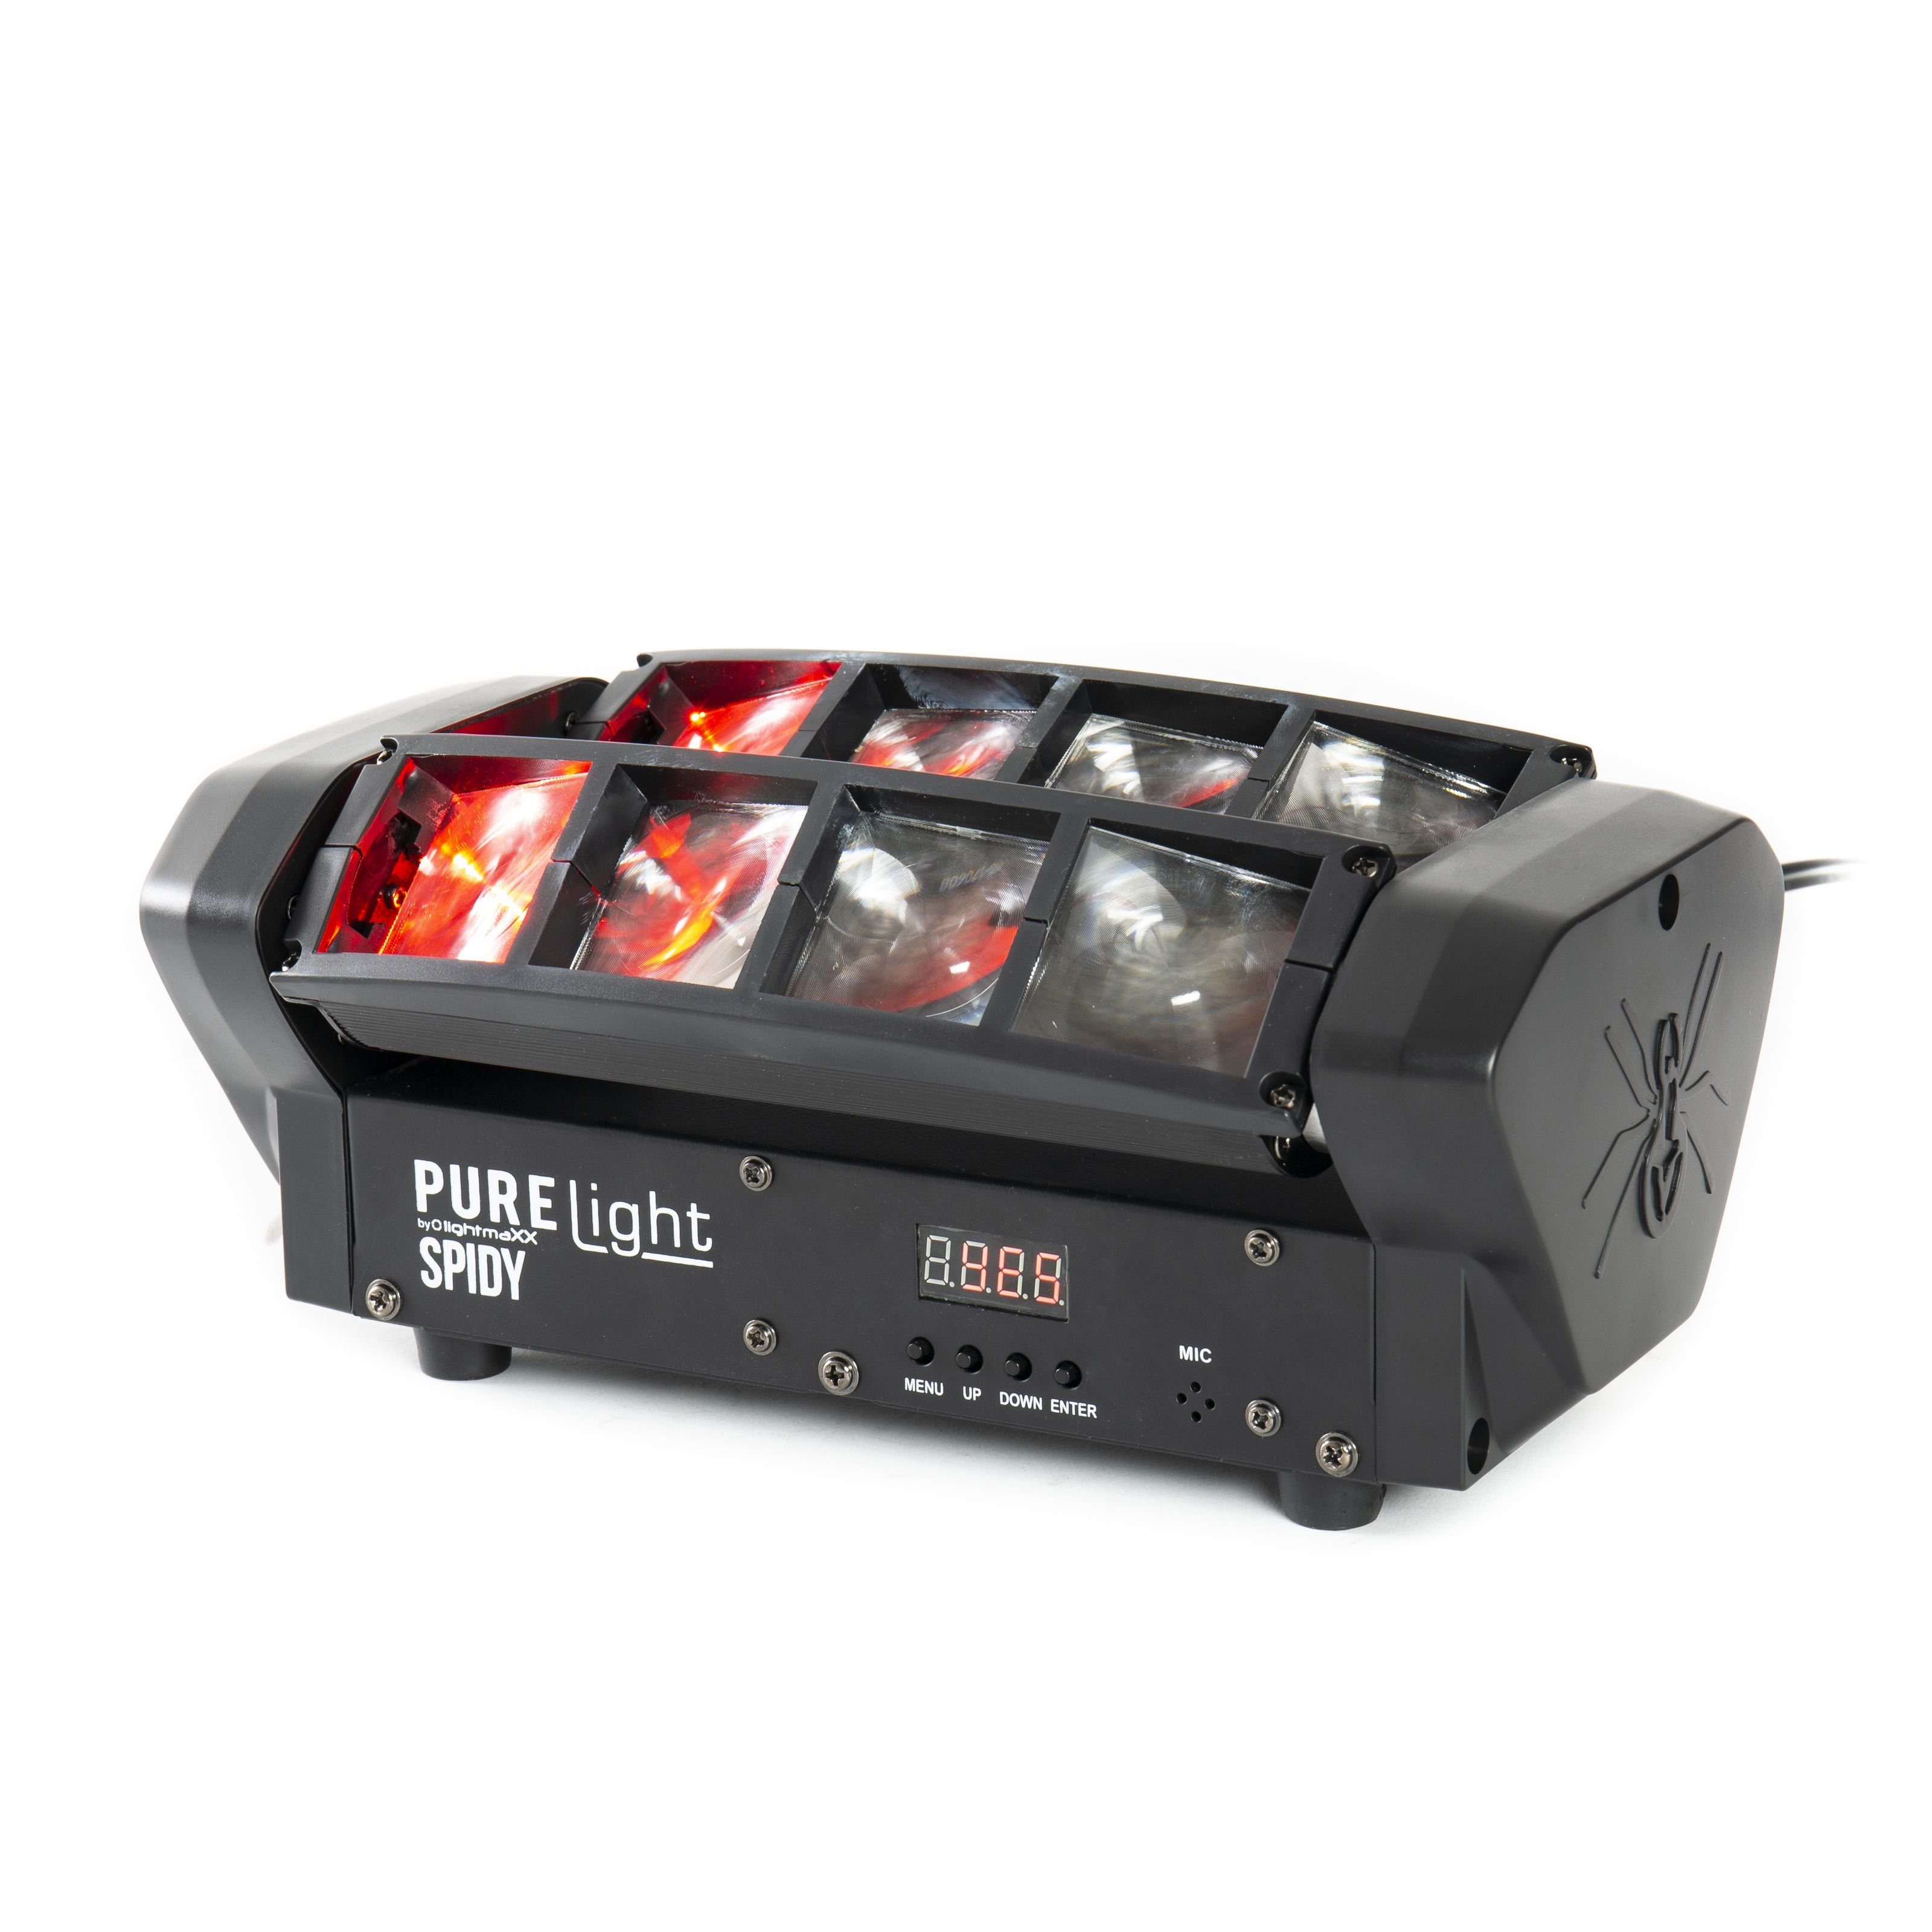 RGBW LED 8x 5W PURElight Discolicht, - Showeffekt Spidy CREE